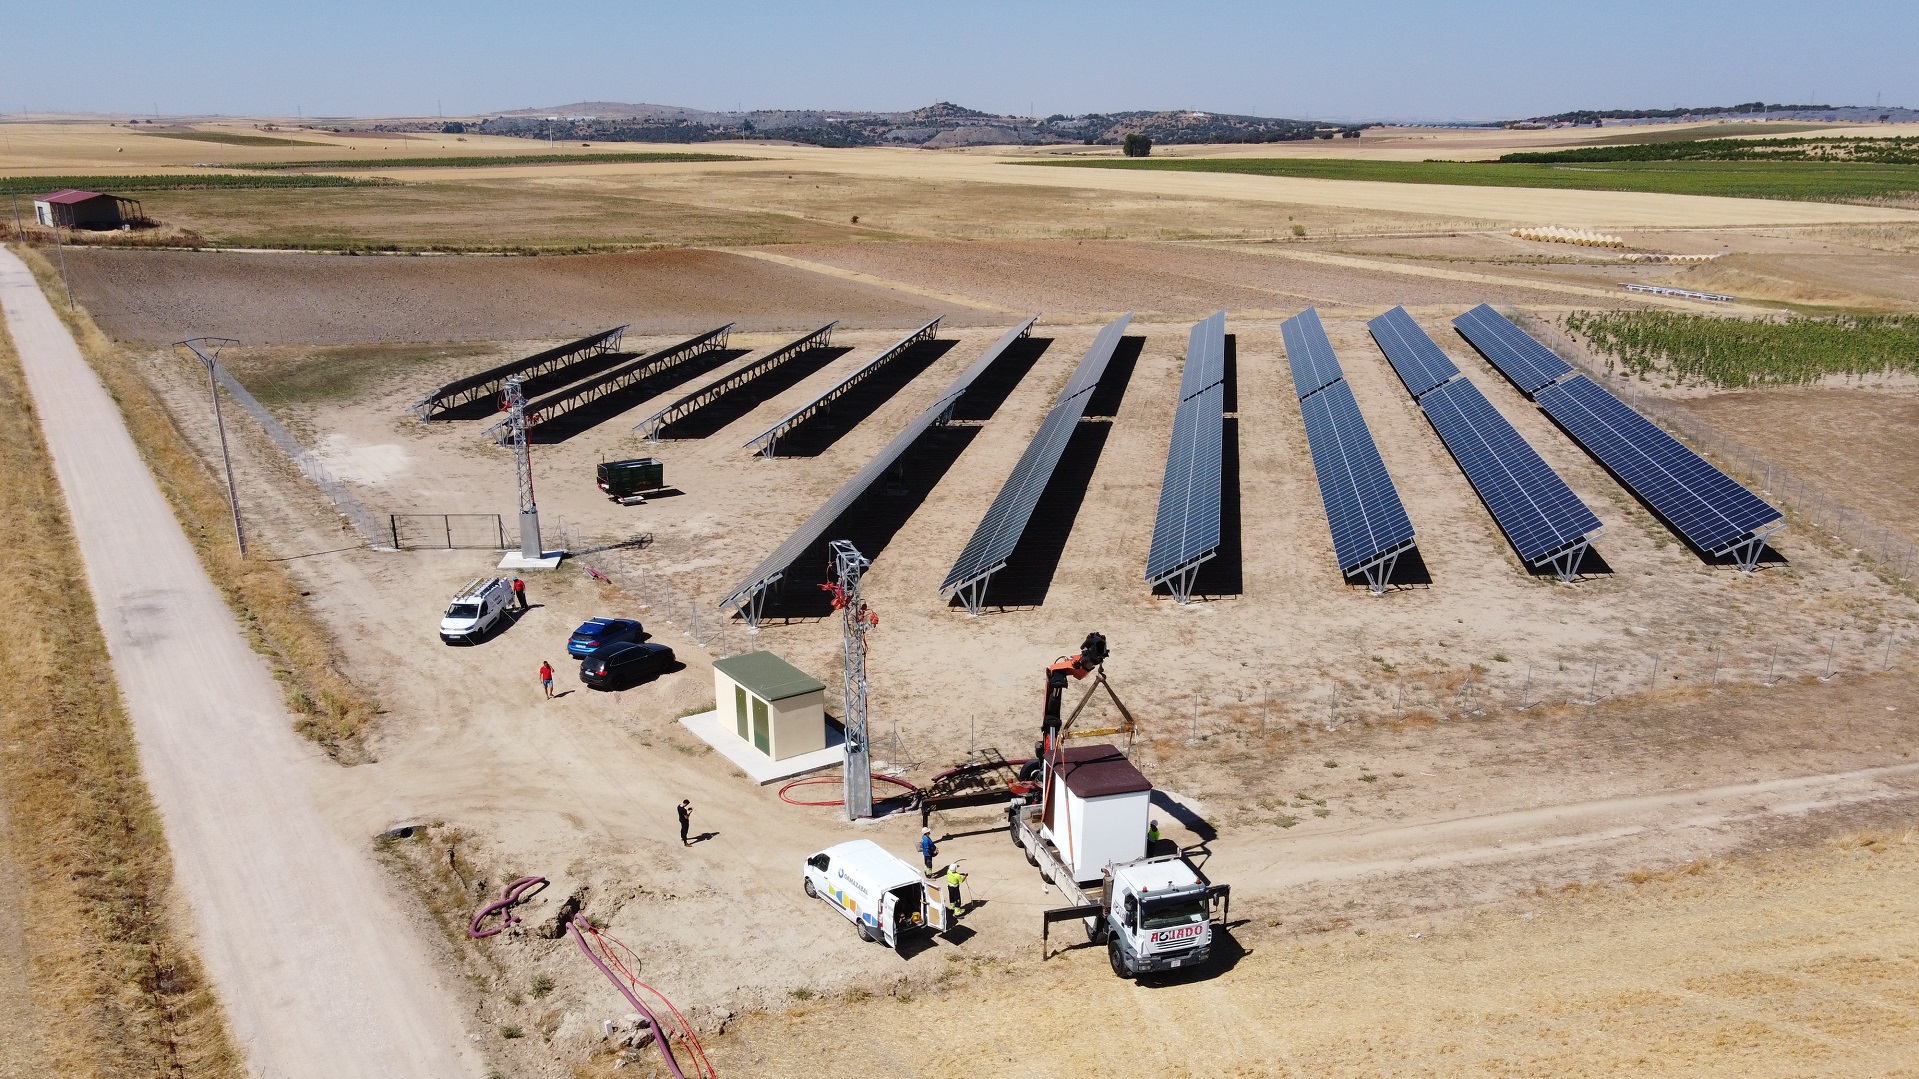 Instalación solar fotovoltaica de venta a red de 1,2 MWp en Carbonero el Mayor (Segovia)